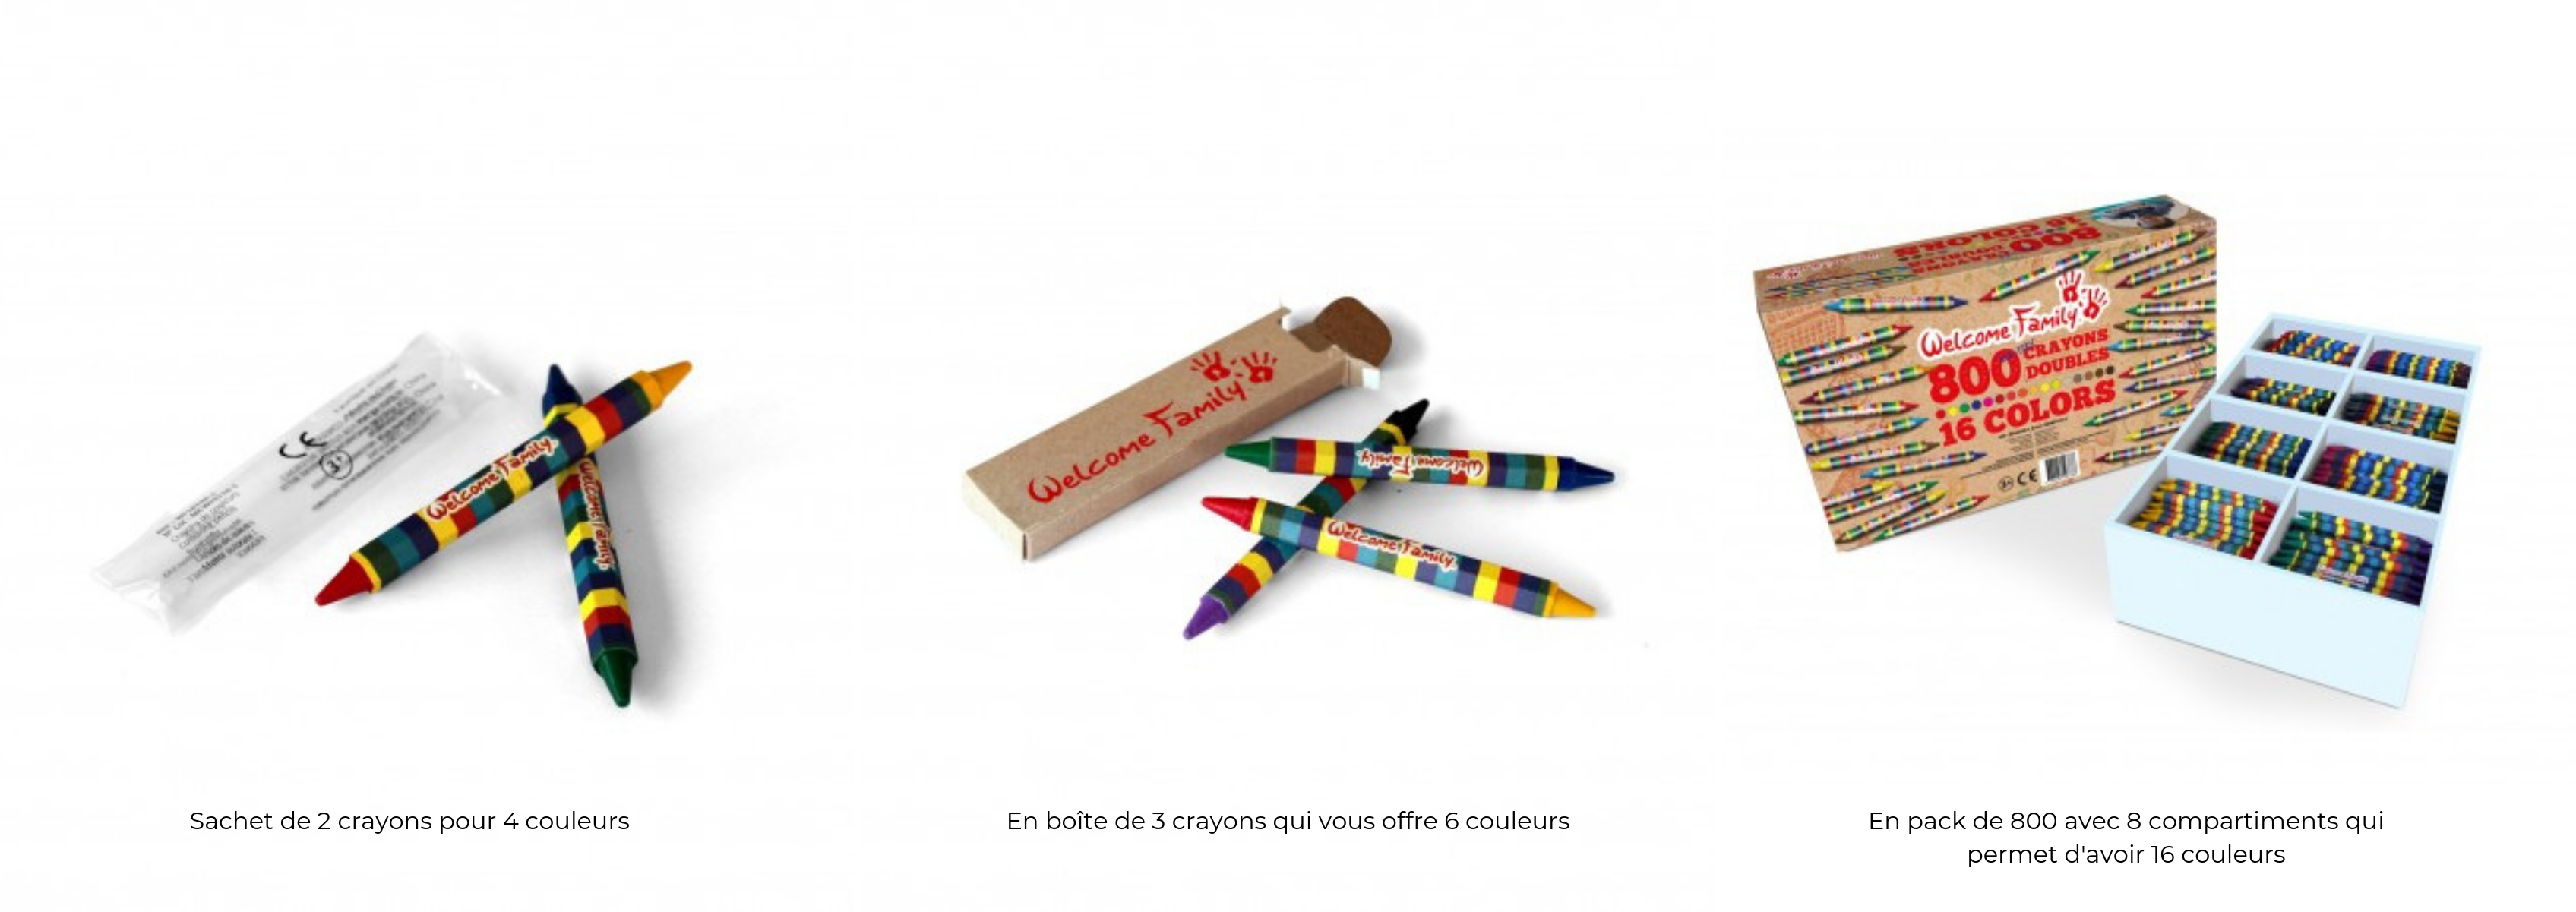 Crayons cires double mines - Produits d'accueil enfants